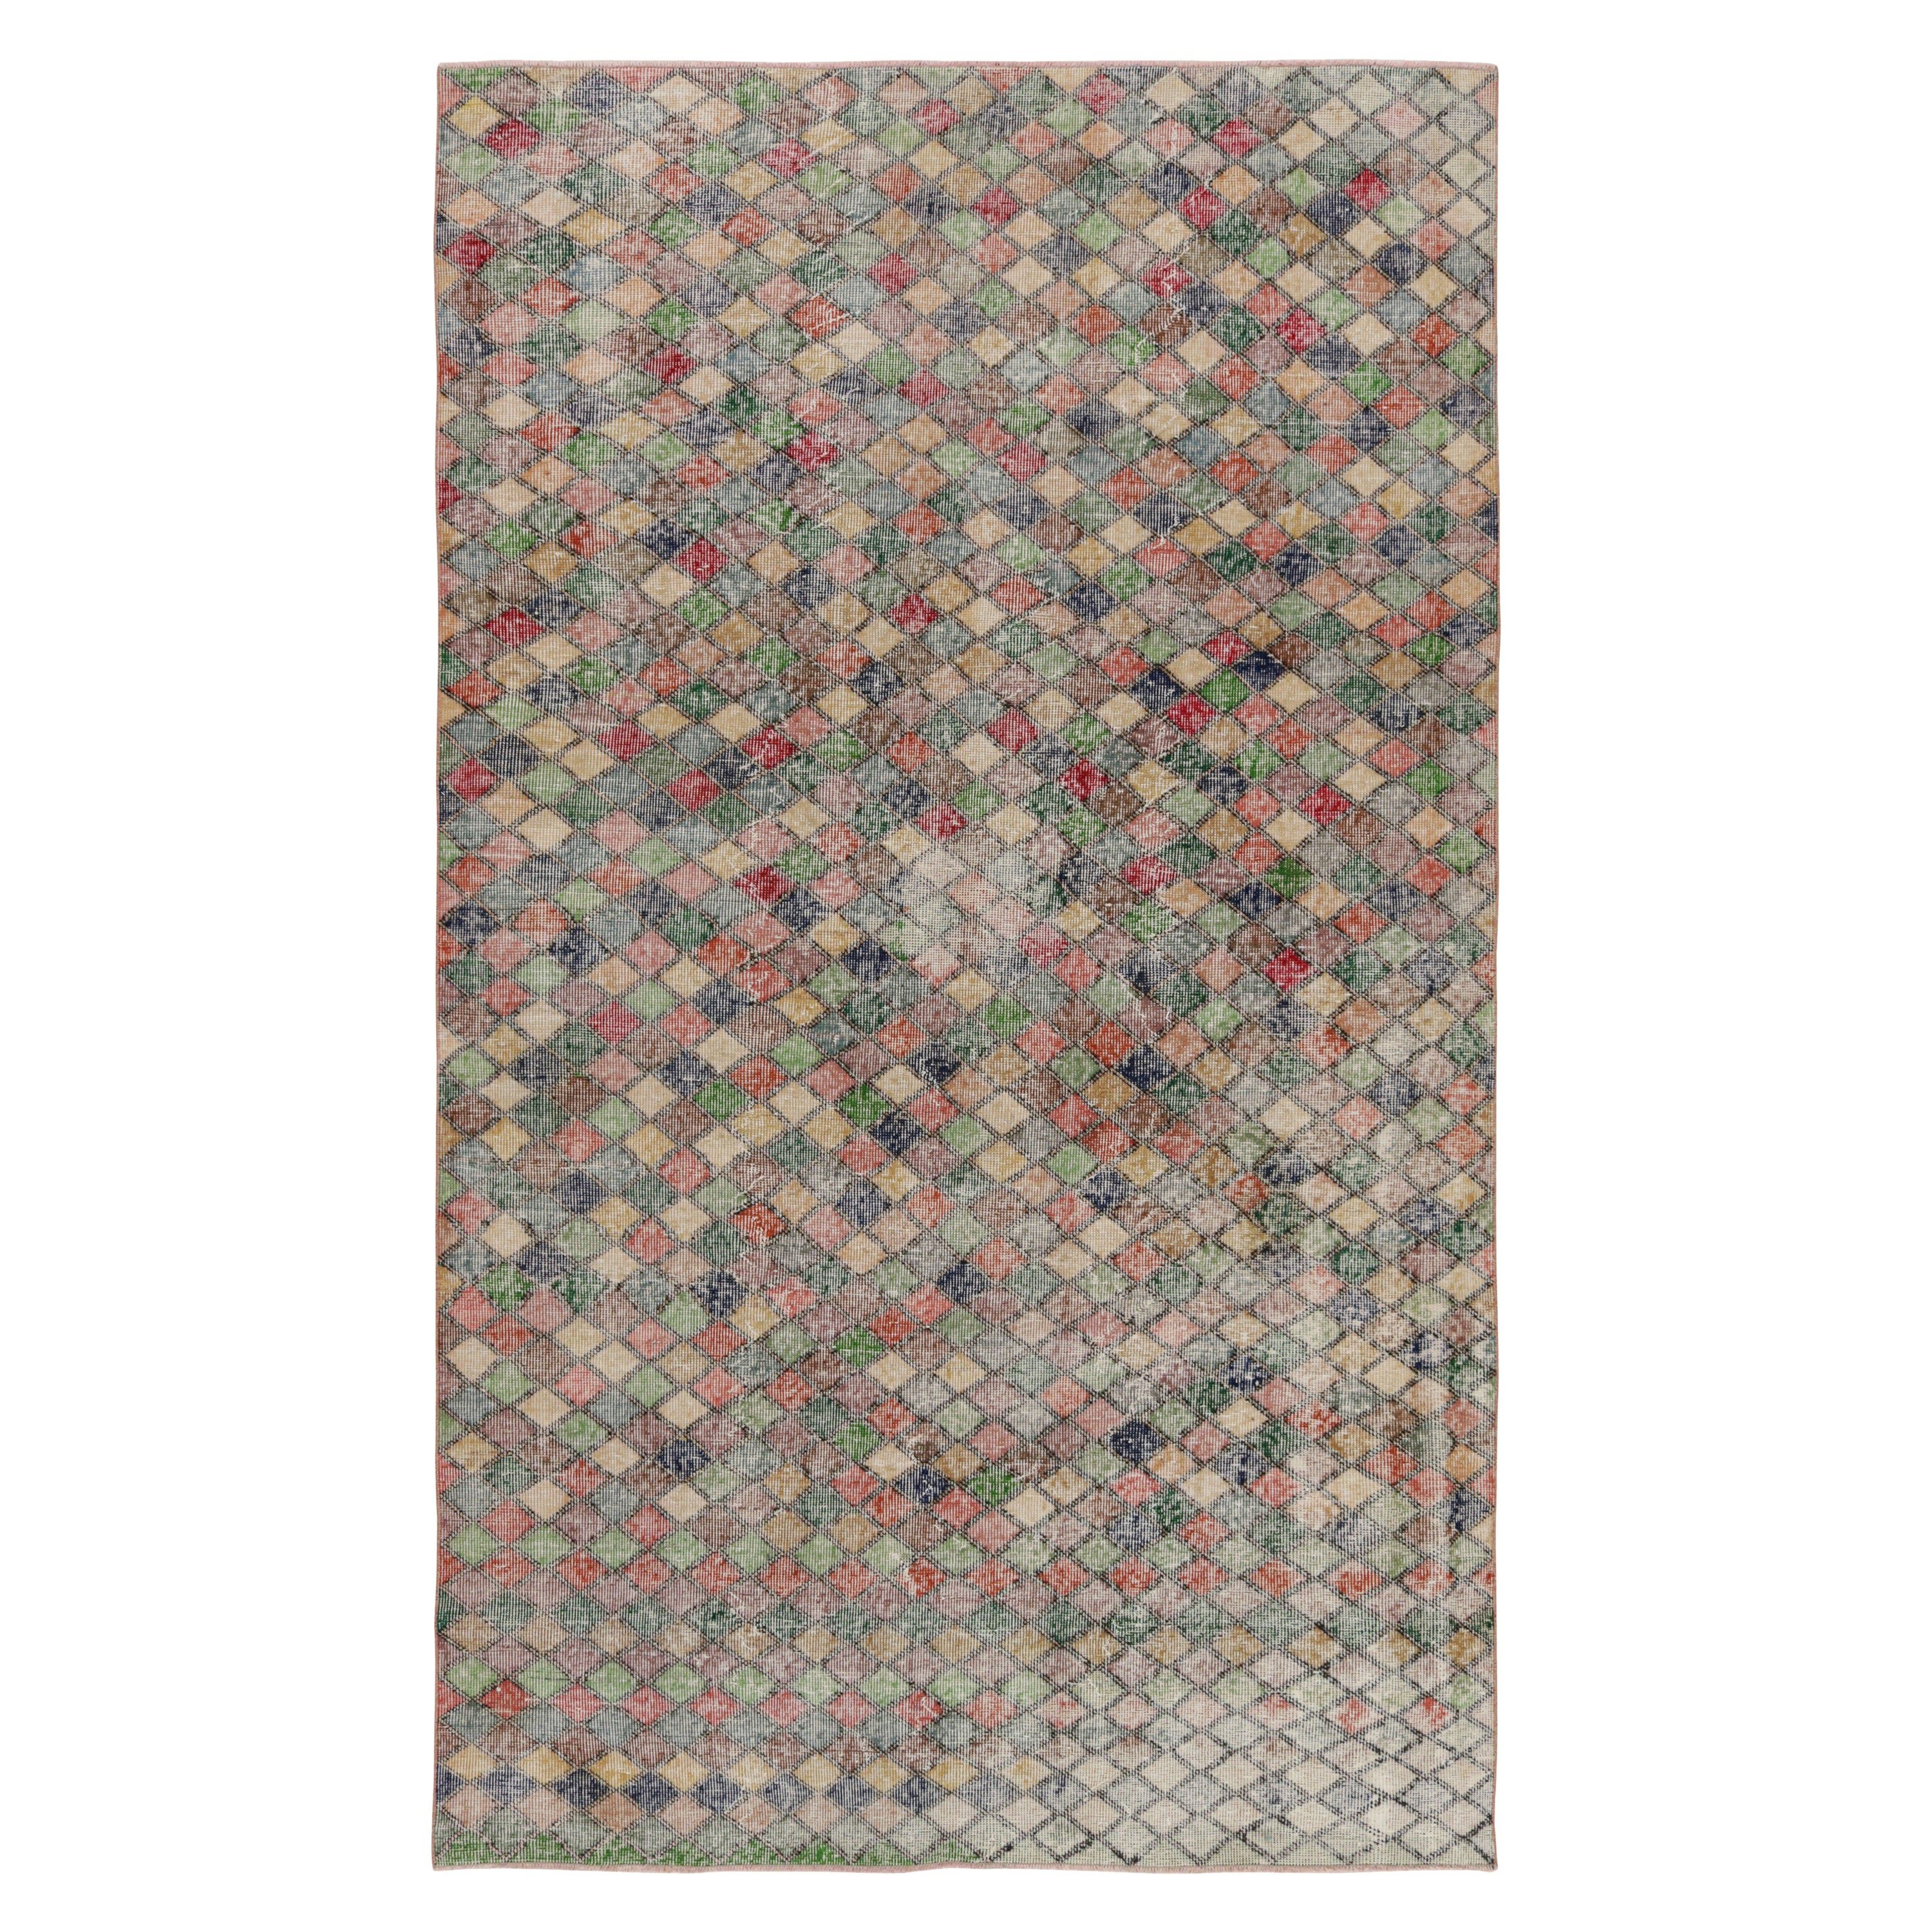 Vintage Zeki Müren Teppich mit polychromen geometrischen Mustern, von Rug & Kilim